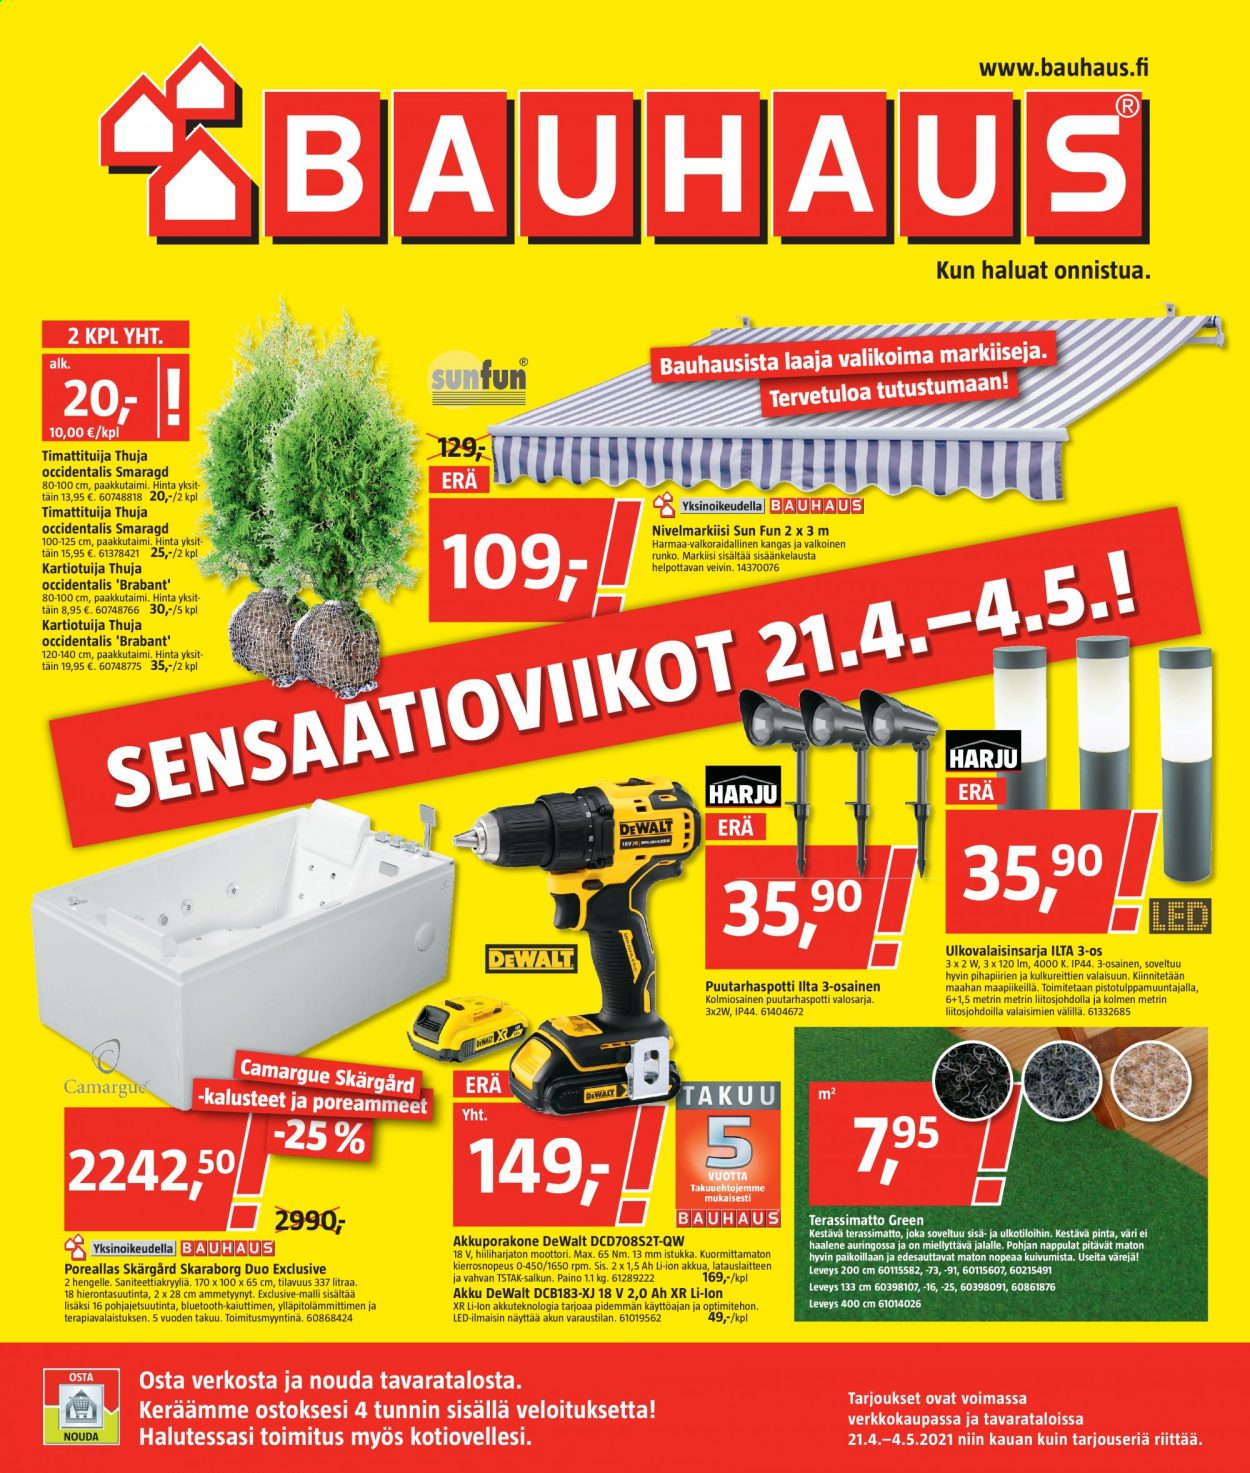 thumbnail - Bauhaus tarjoukset  - 21.04.2021 - 04.05.2021 - Tarjoustuotteet - poreallas, valosarja, akkuporakone. Sivu 1.